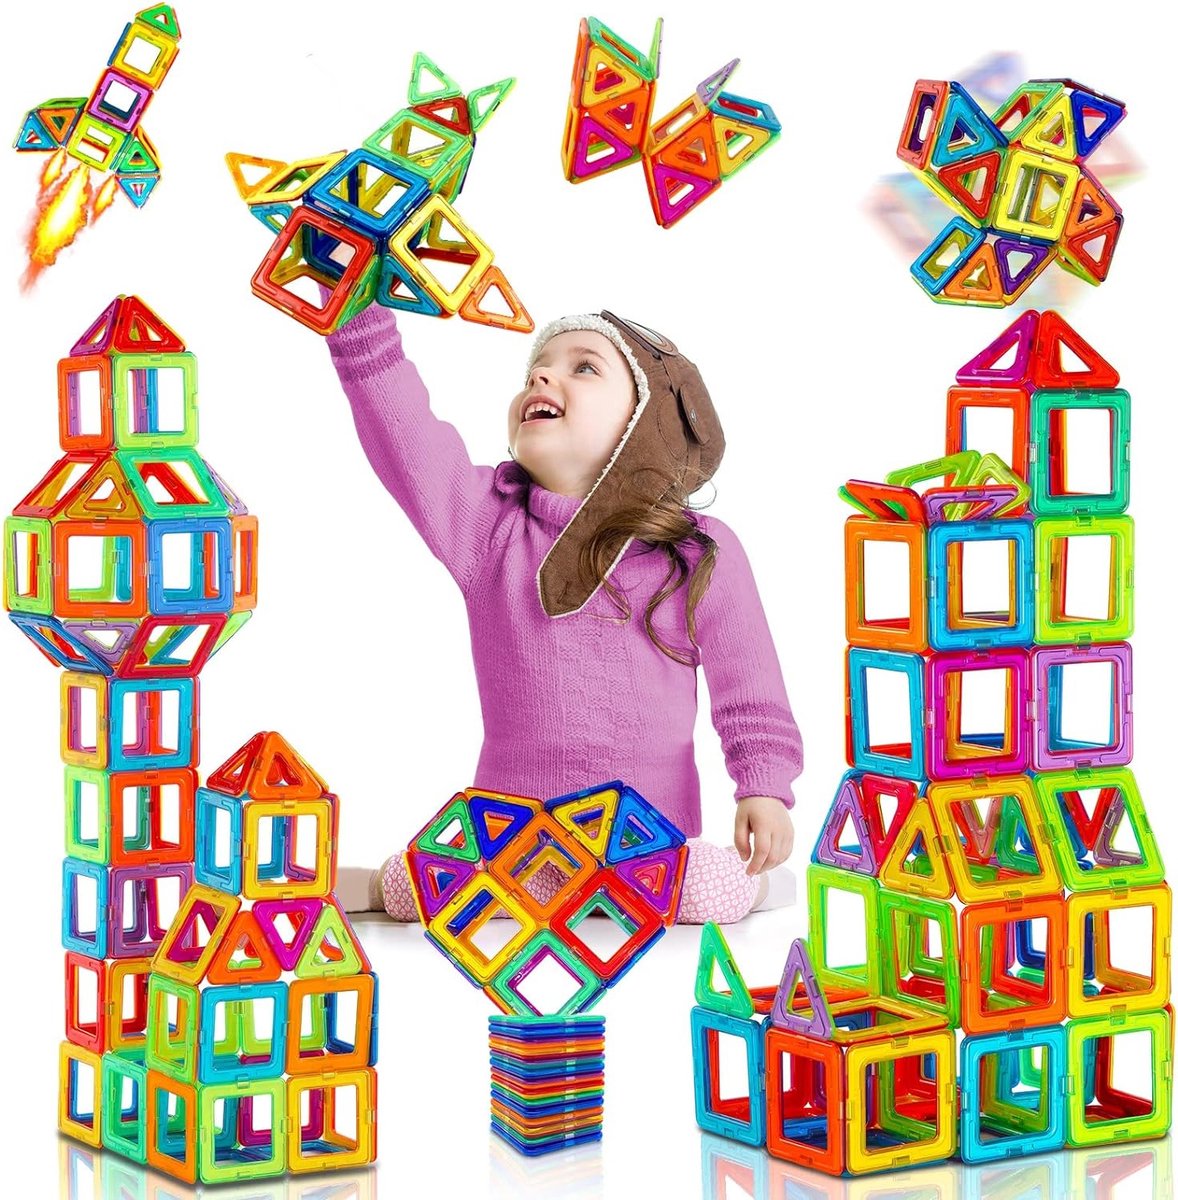 Magnetische bouwstenen bouwblokken 38 stuks - voor kinderen jongens/meisjes vanaf 3 jaar - Educatieve speelgoed, ontwikkeling van verbeelding, creatief denken, concentratie